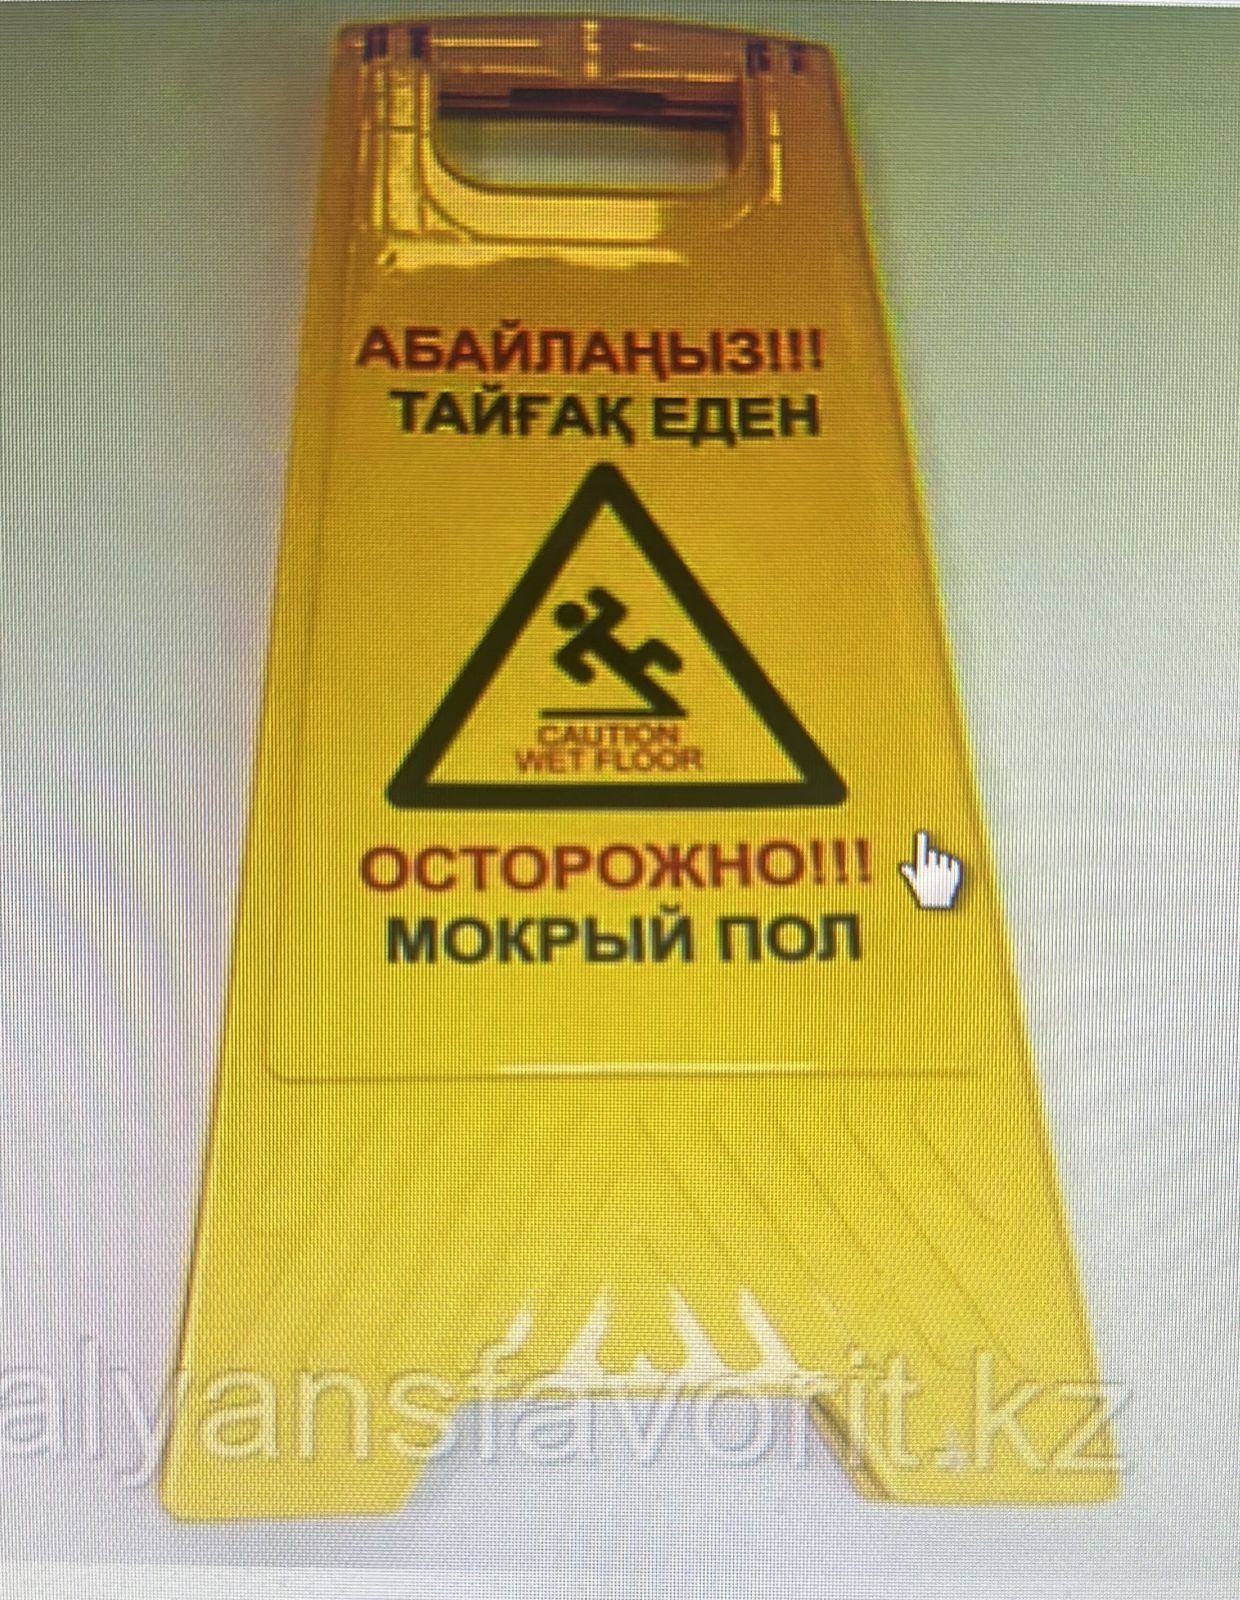 Знак предупреждающий "Осторожно! Мокрый пол", желтый, с ручкой